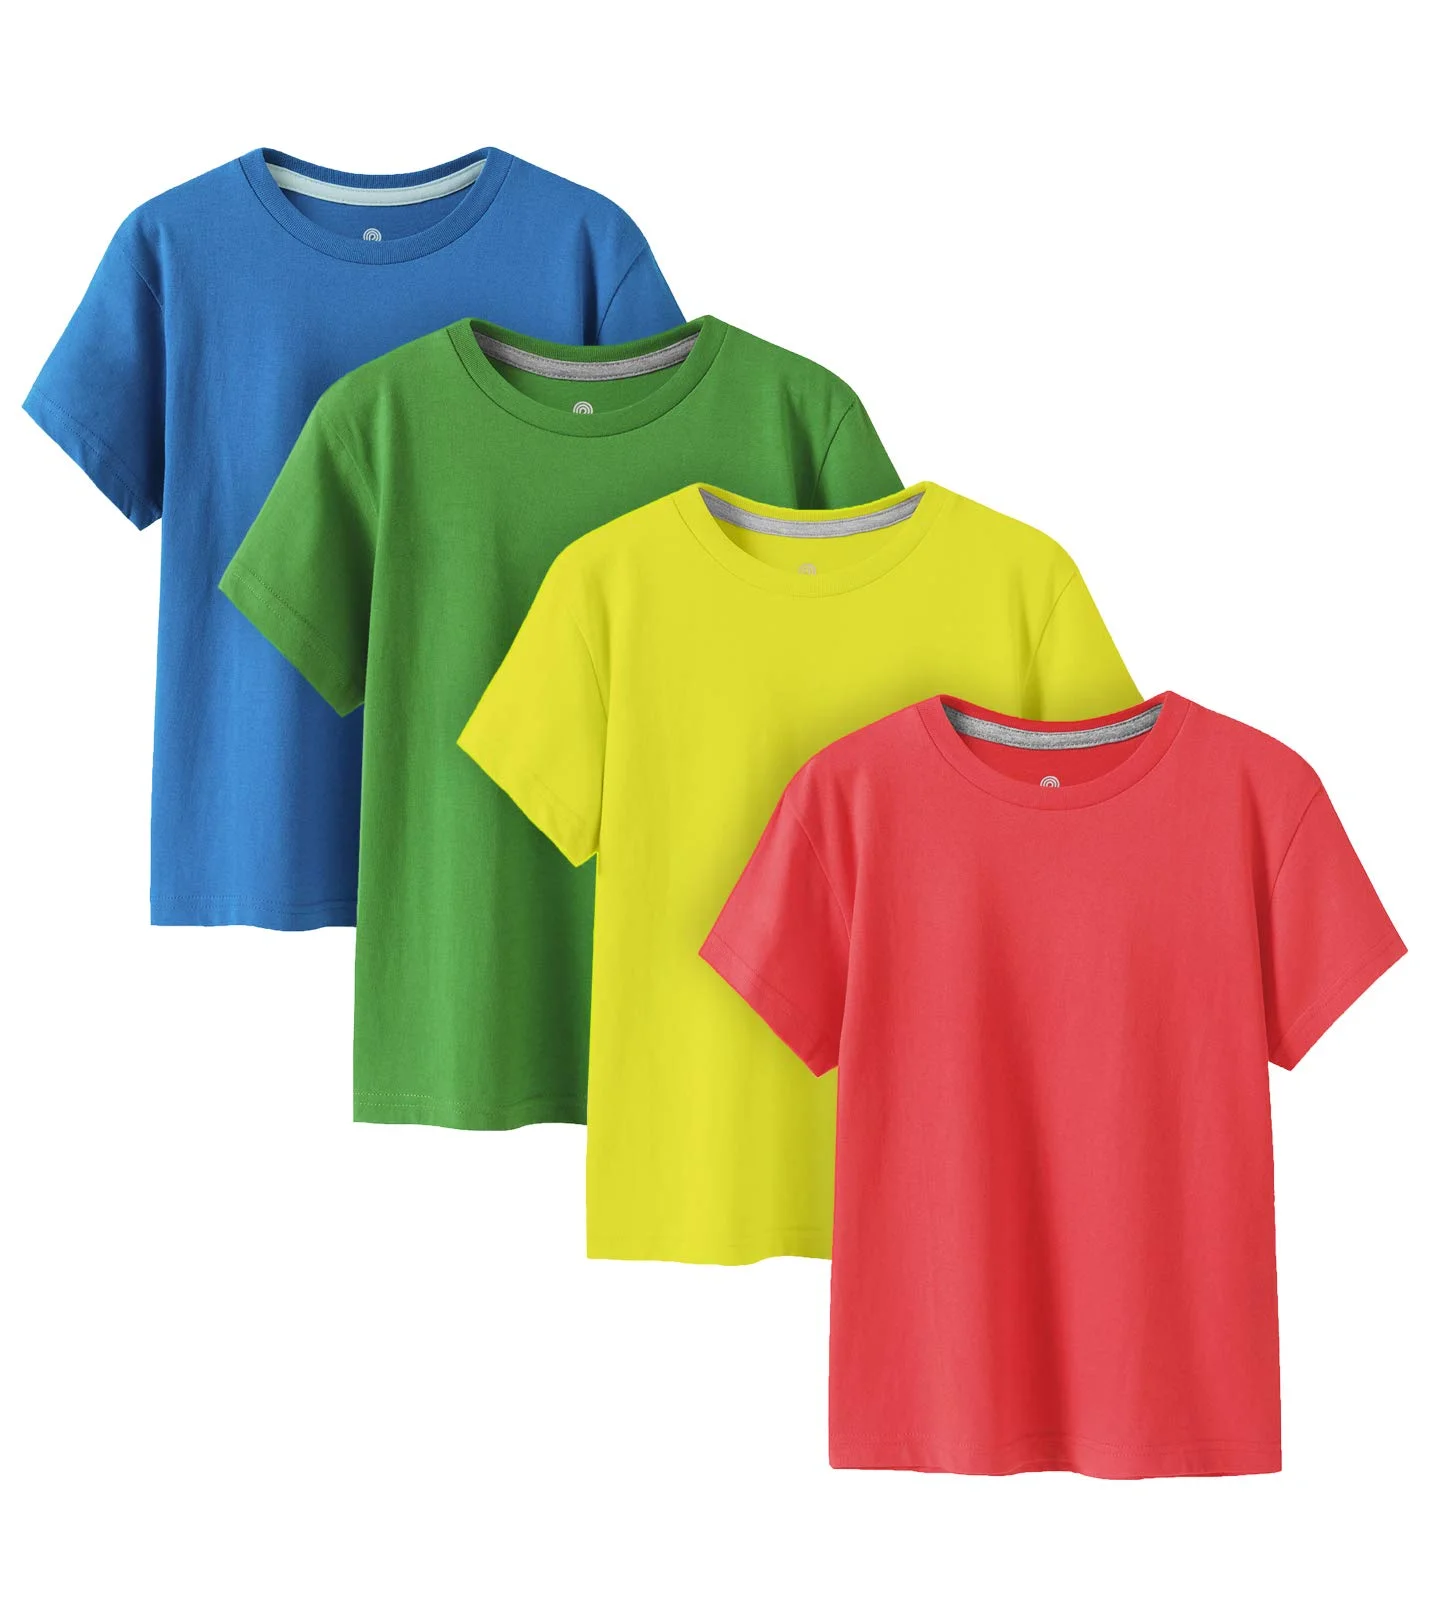 Wholesale T-shirts Paraguay